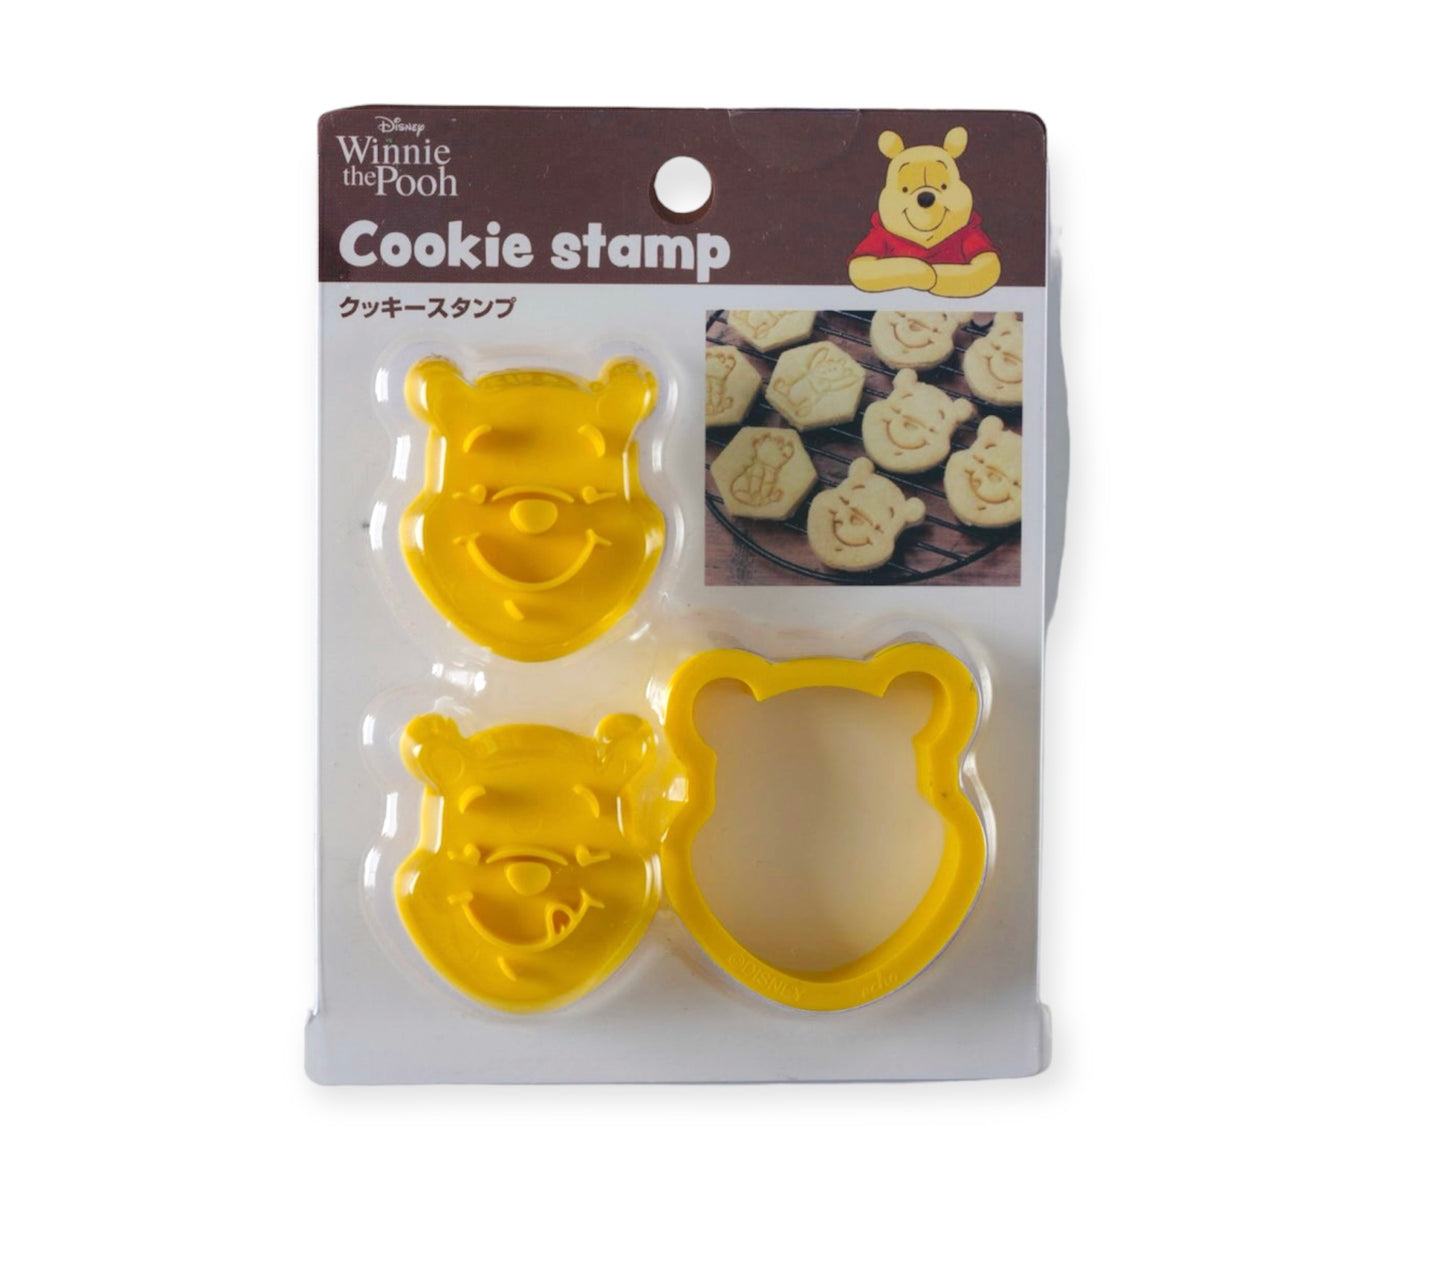 Winnie the Pooh Cookie Stamp